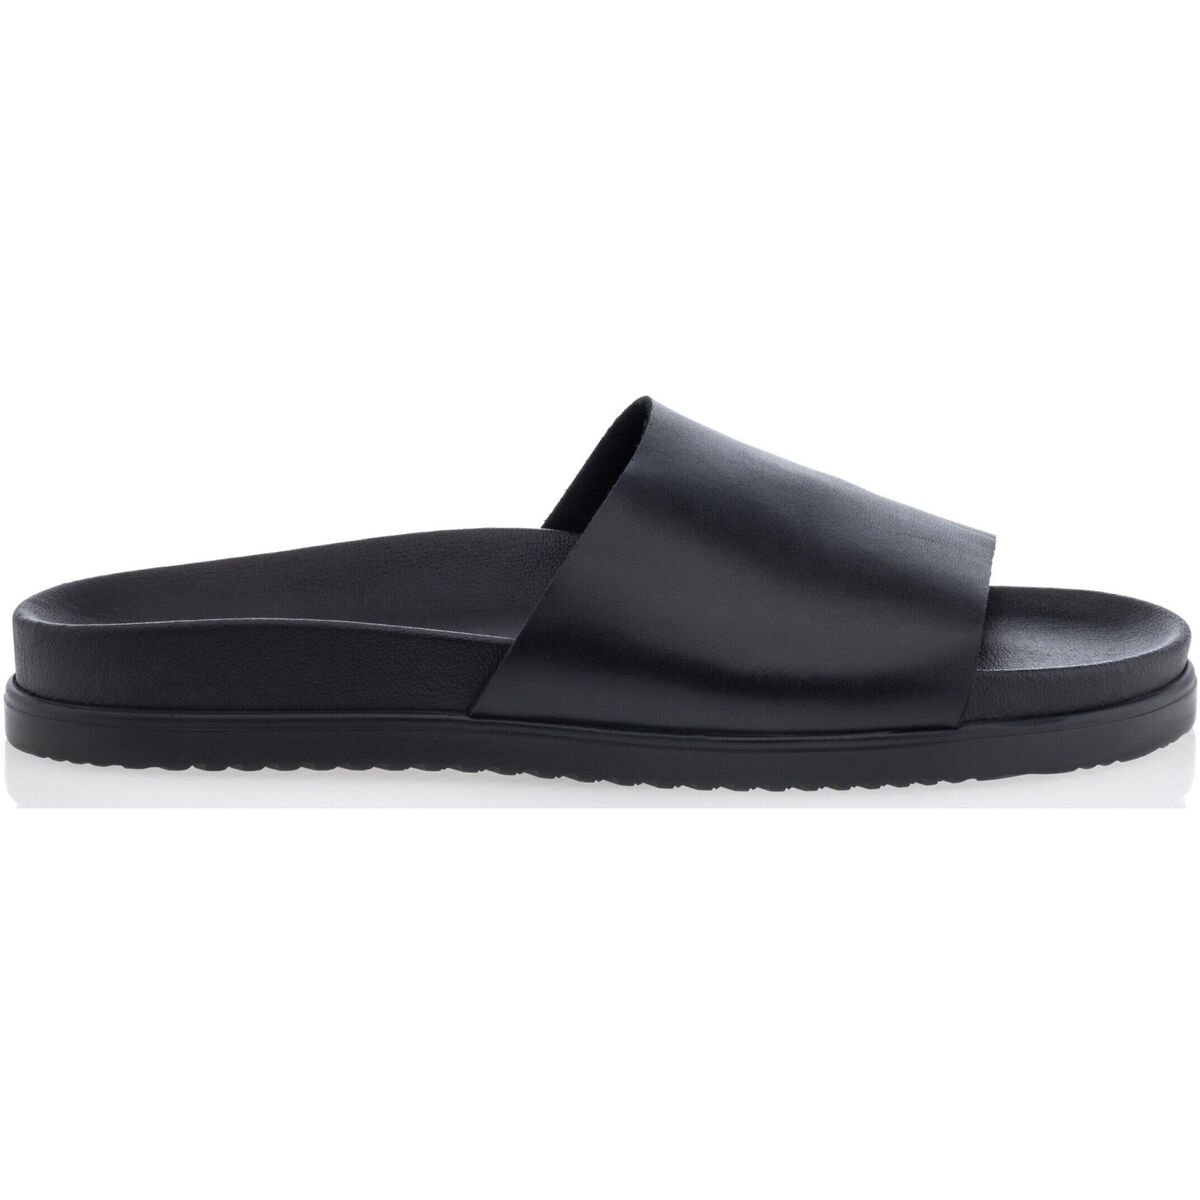 Chaussures Homme Connectez-vous pour ajouter un avis Midtown District Sandales / nu-pieds Homme Noir Noir